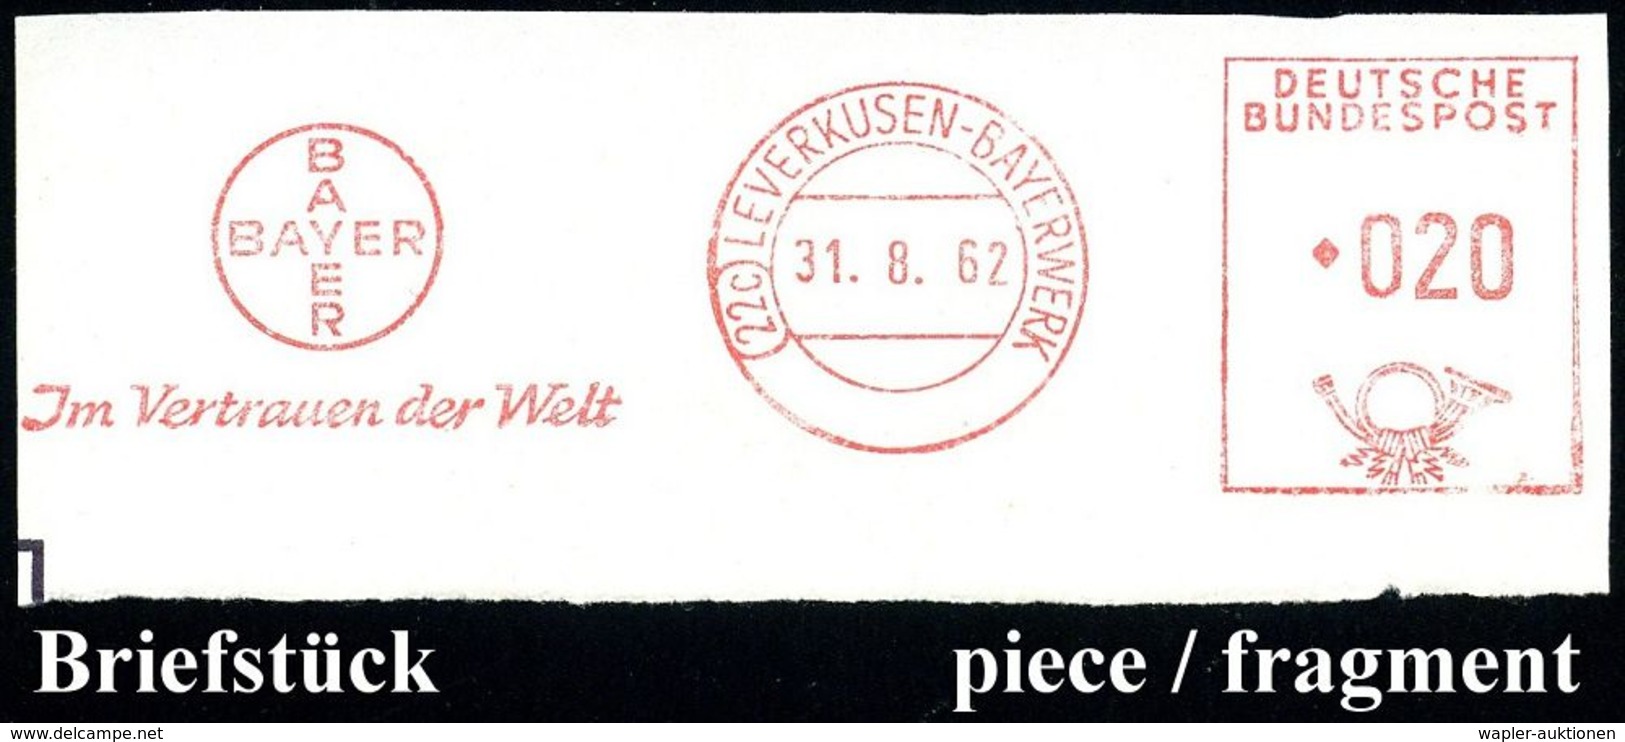 LEVERKUSEN-I.G.WERK.. 1937/70 20 verschiedene AFS des I.G.-Werks Leverkusen bzw. LEVERKUSEN-BAYERWERK.. , 20 kleine Brie